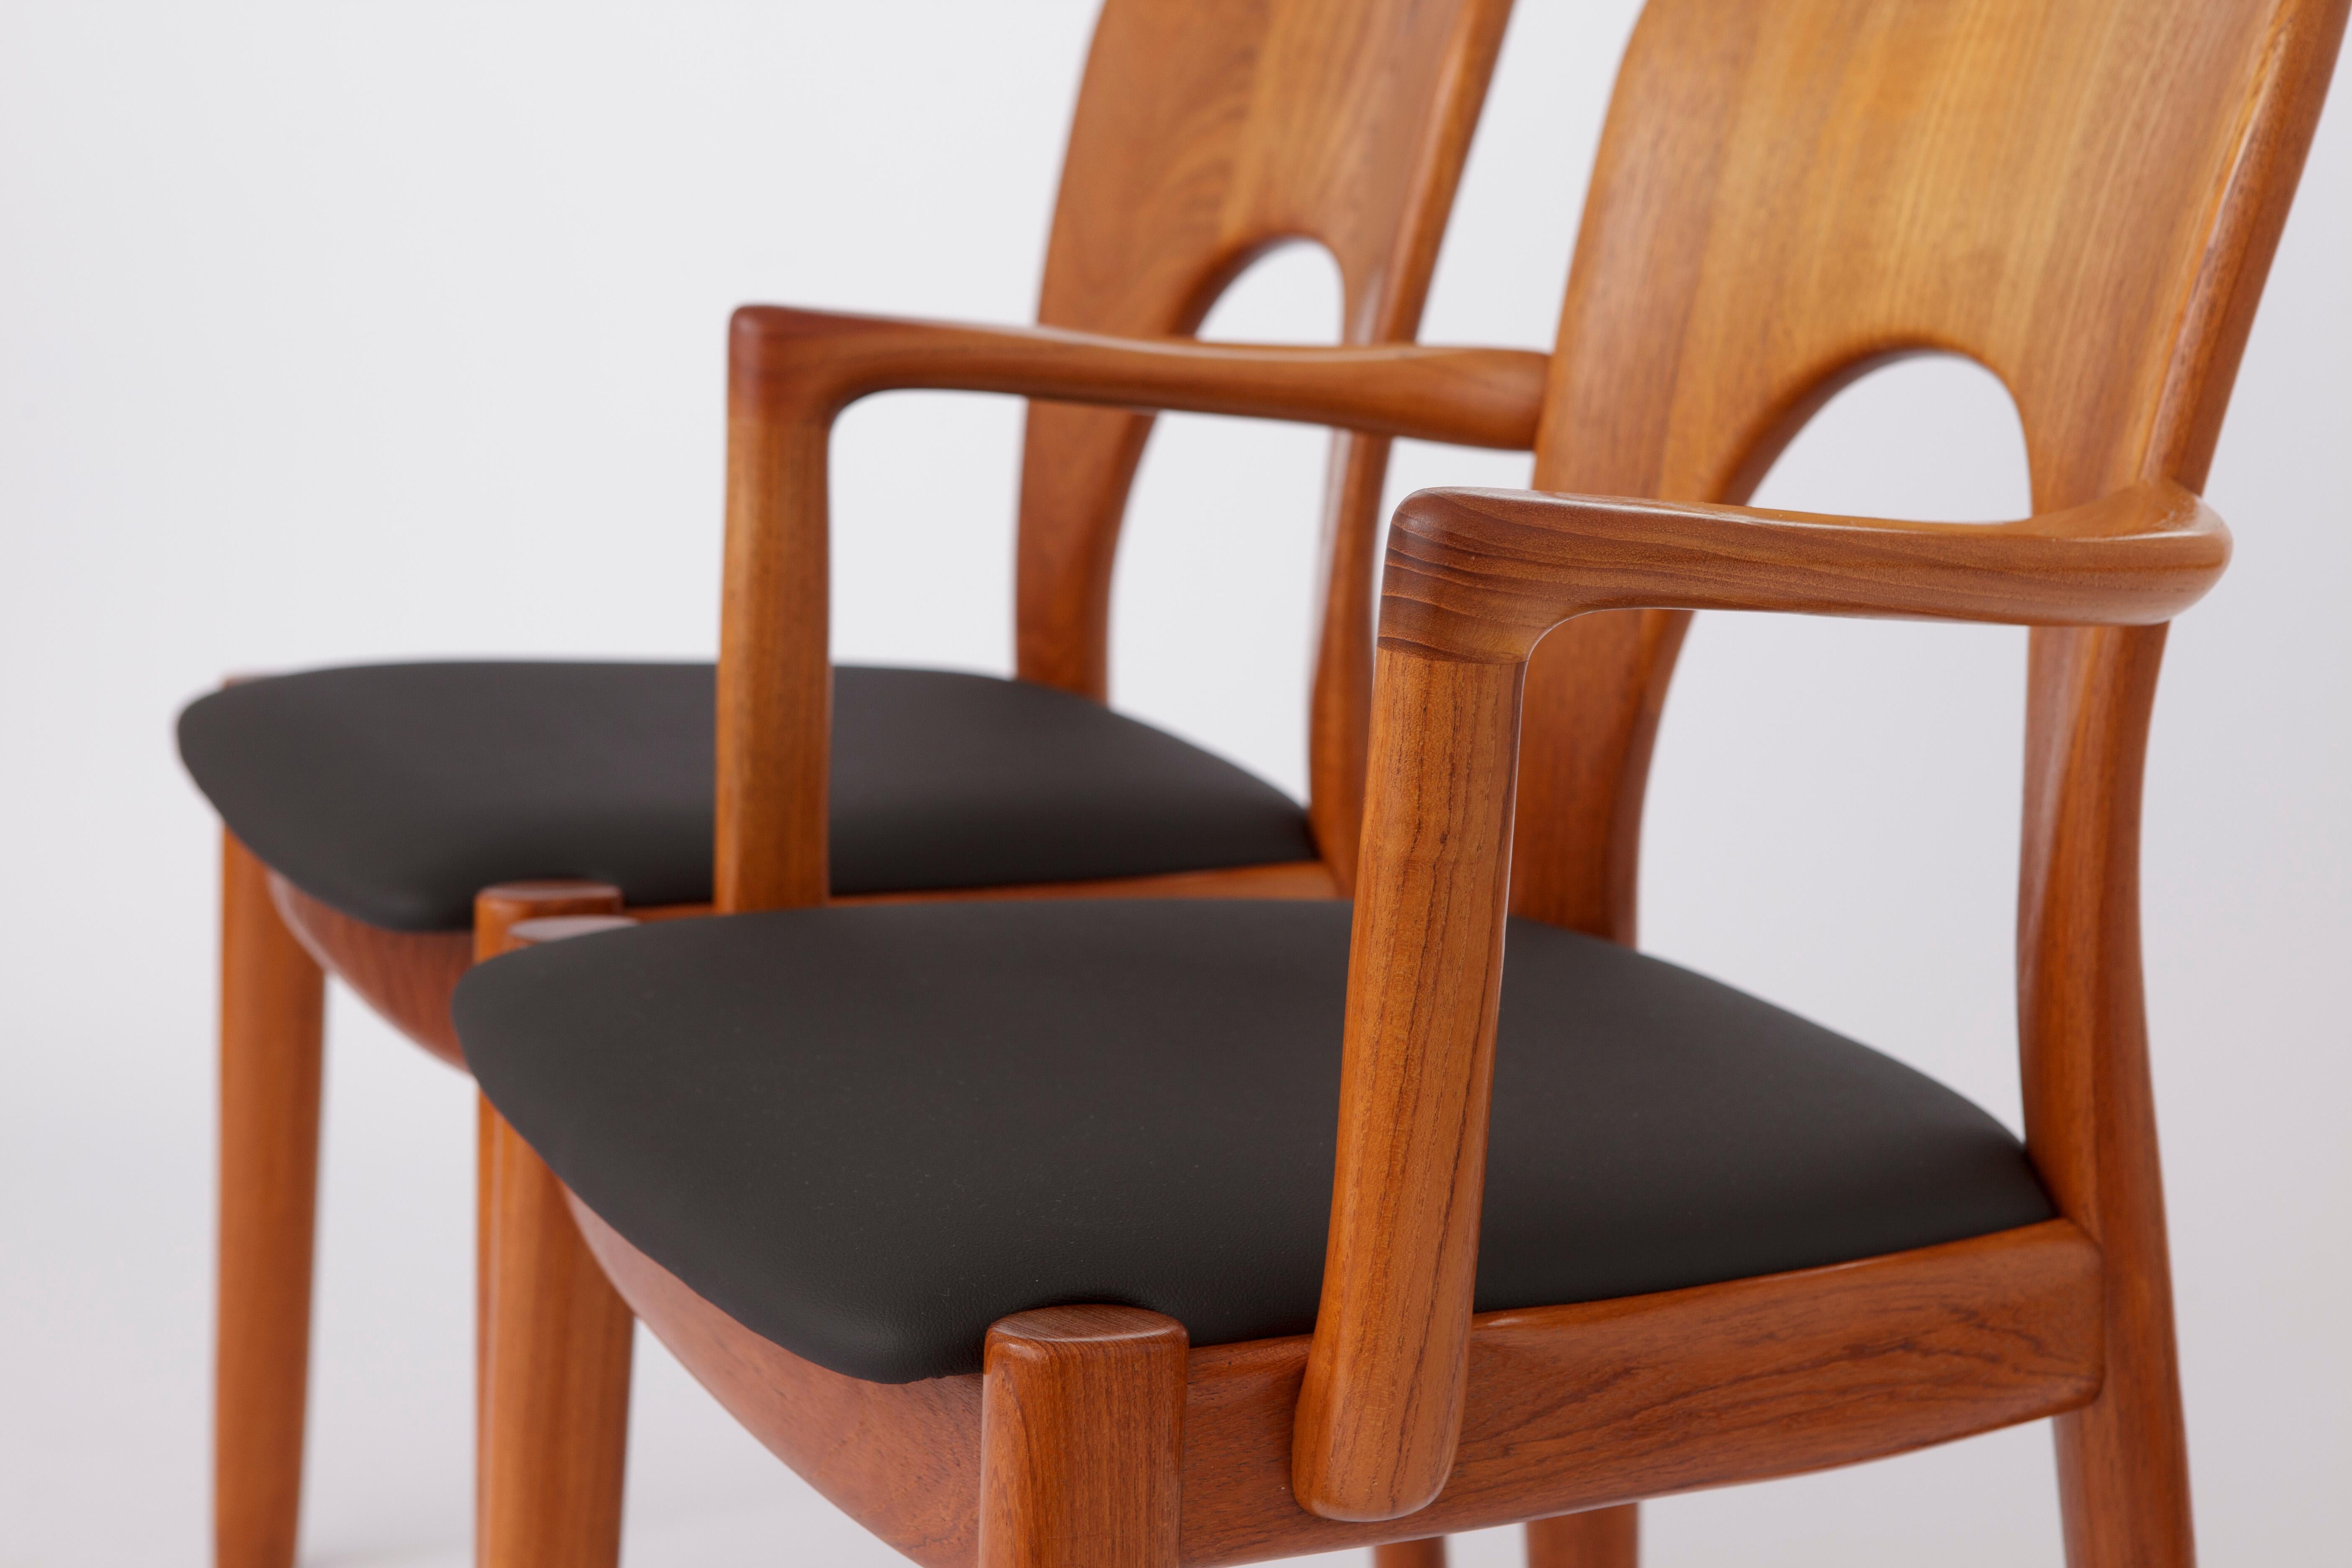 5 Vintage Chairs by Niels Koefoed 1960s Danish Teak For Sale 2